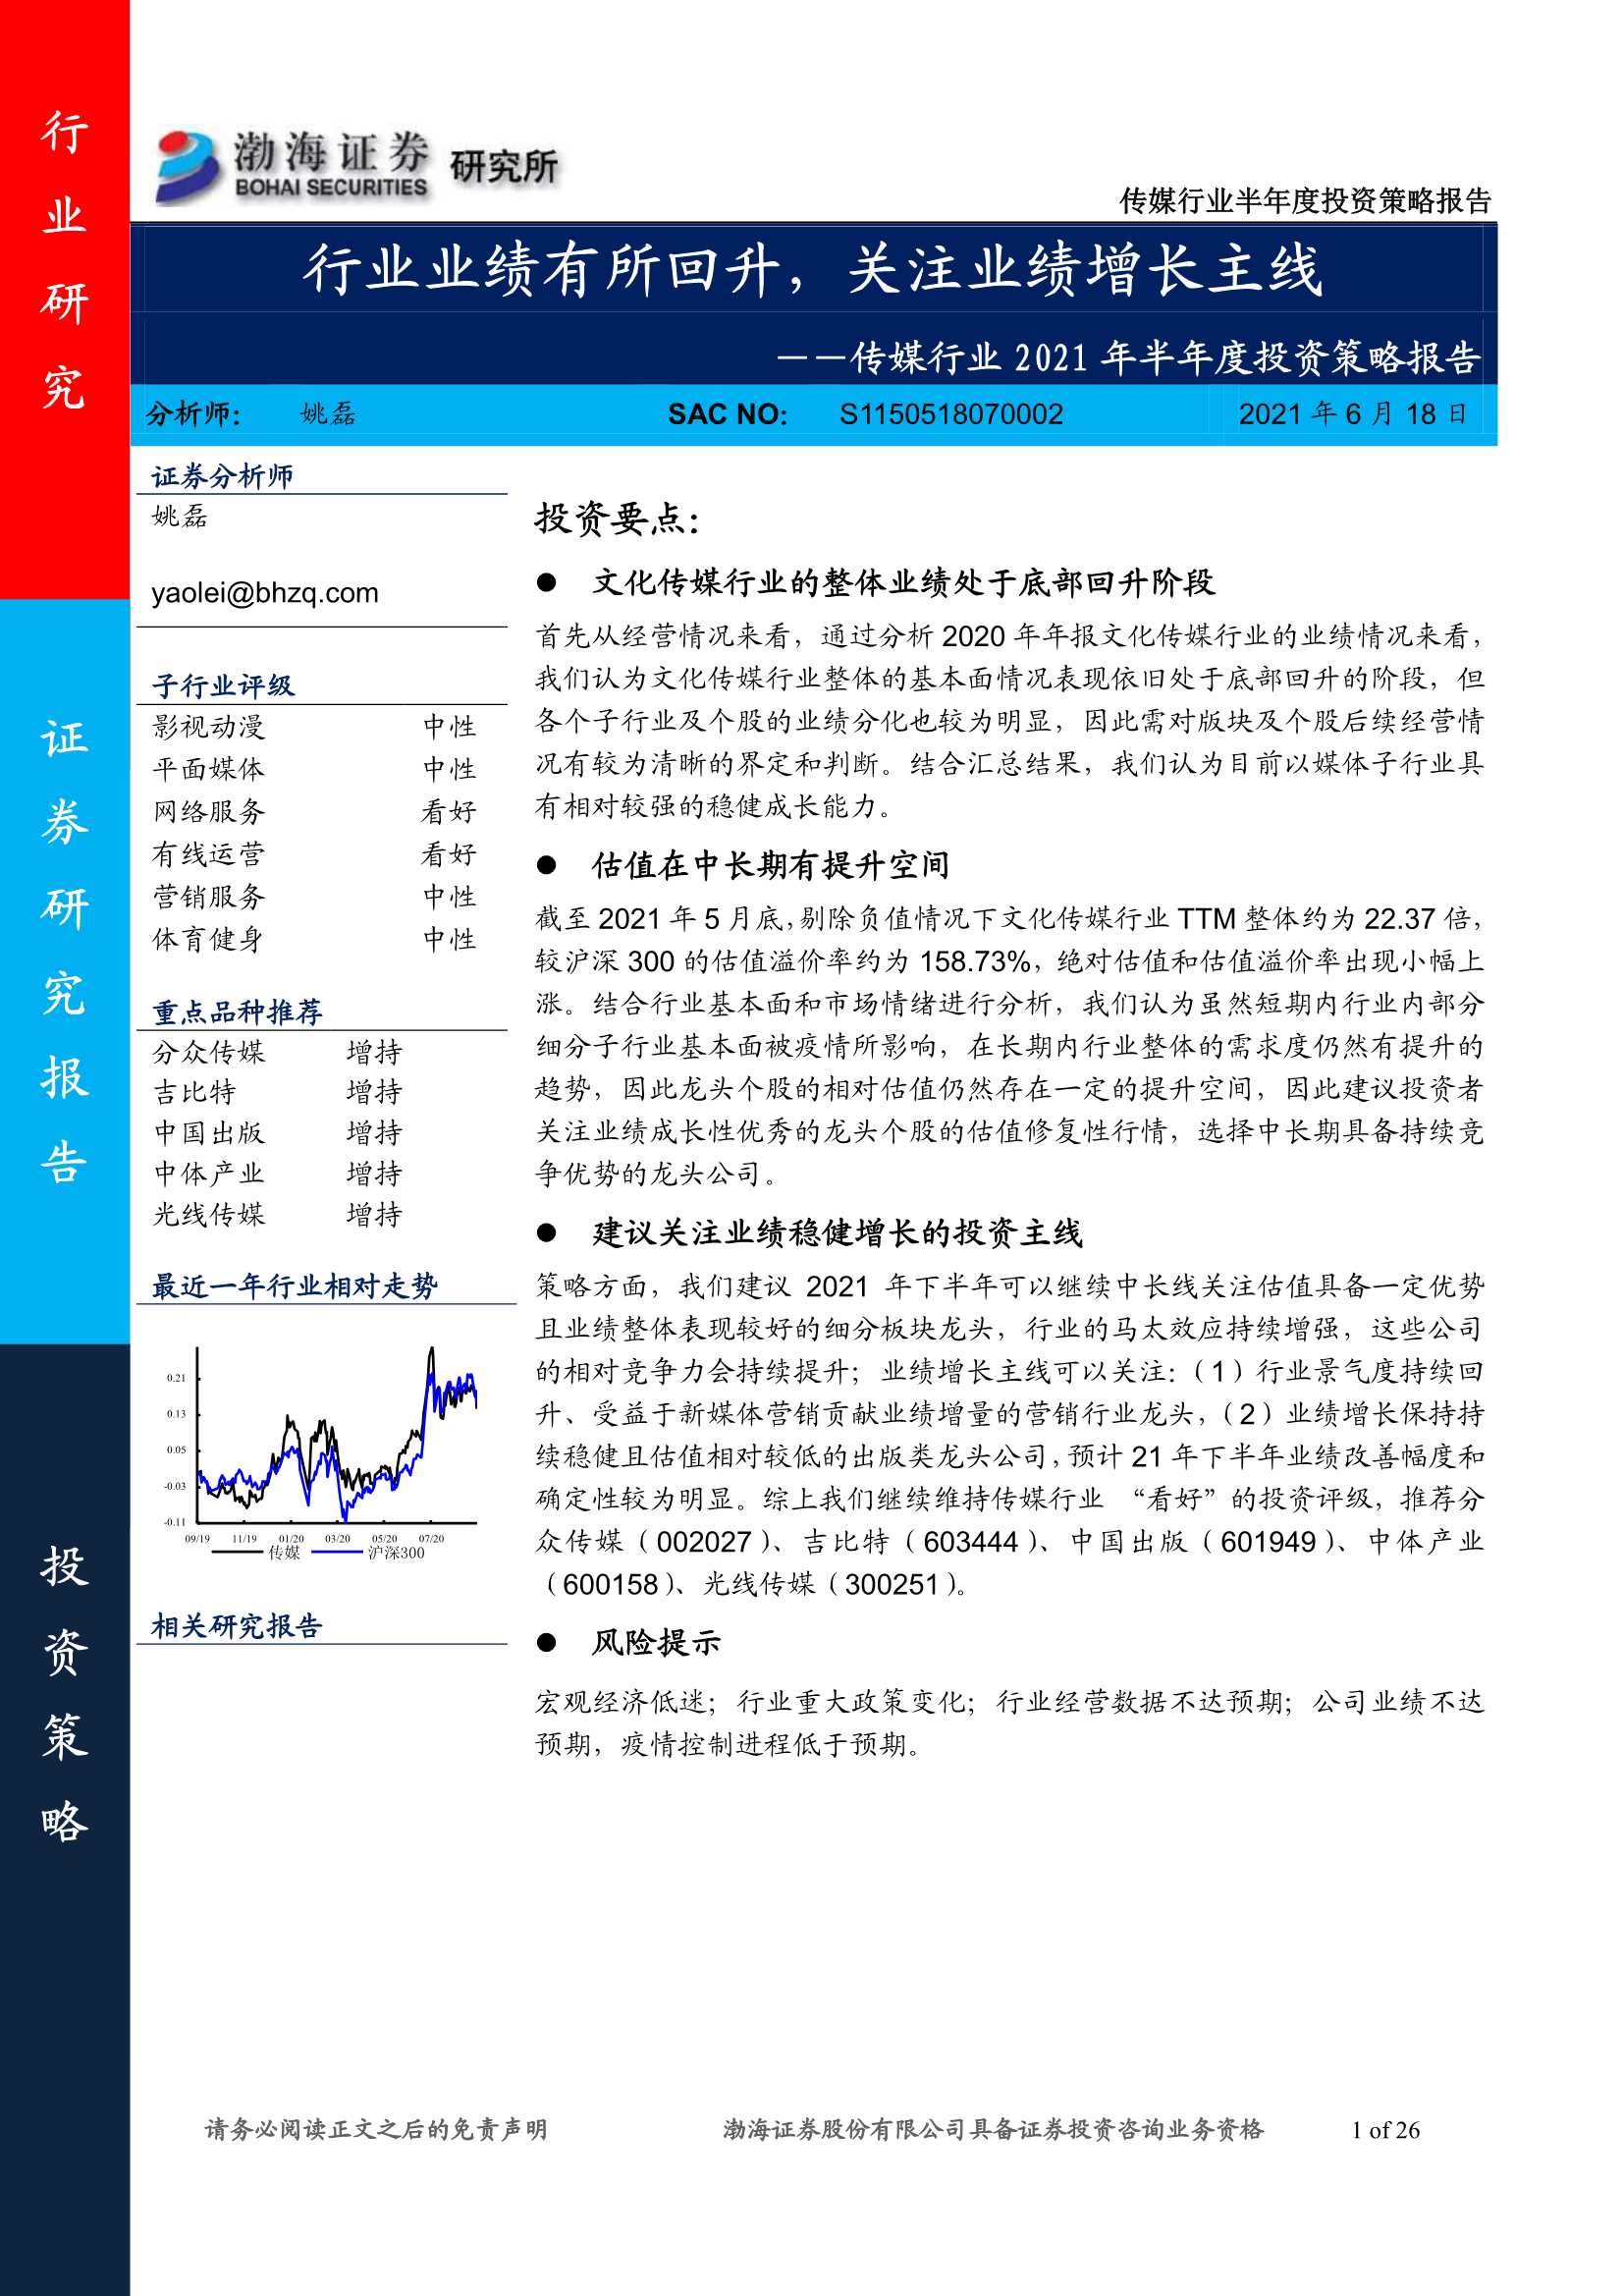 渤海证券-传媒行业2021年半年度投资策略报告：行业业绩有所回升，关注业绩增长主线-20210618-26页